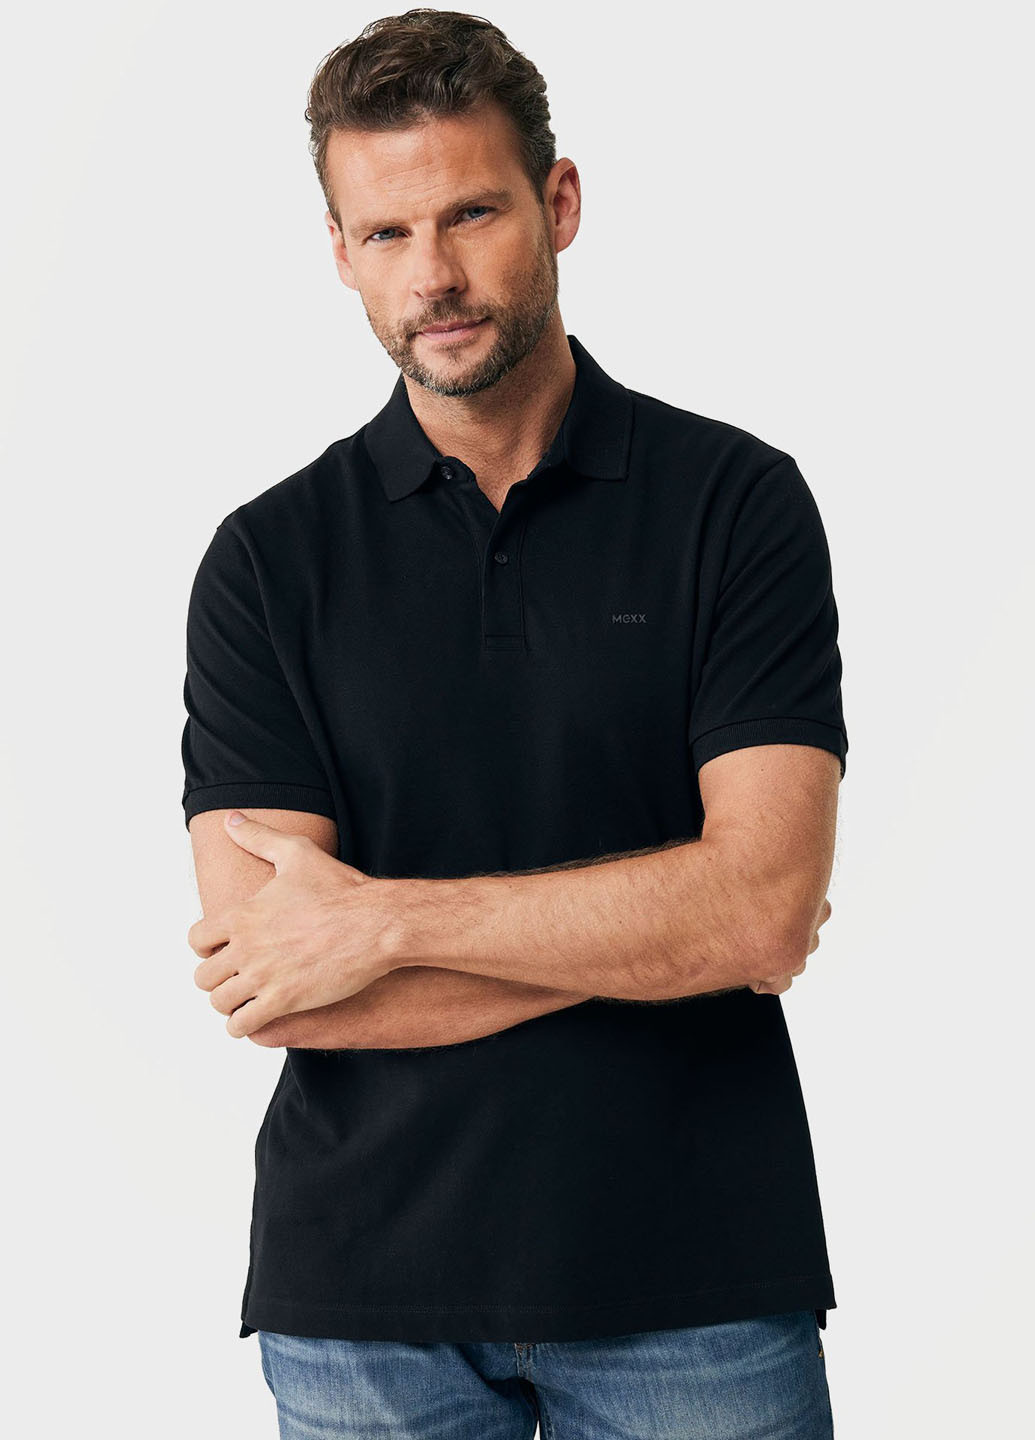 Черная футболка-поло для мужчин Mexx однотонная